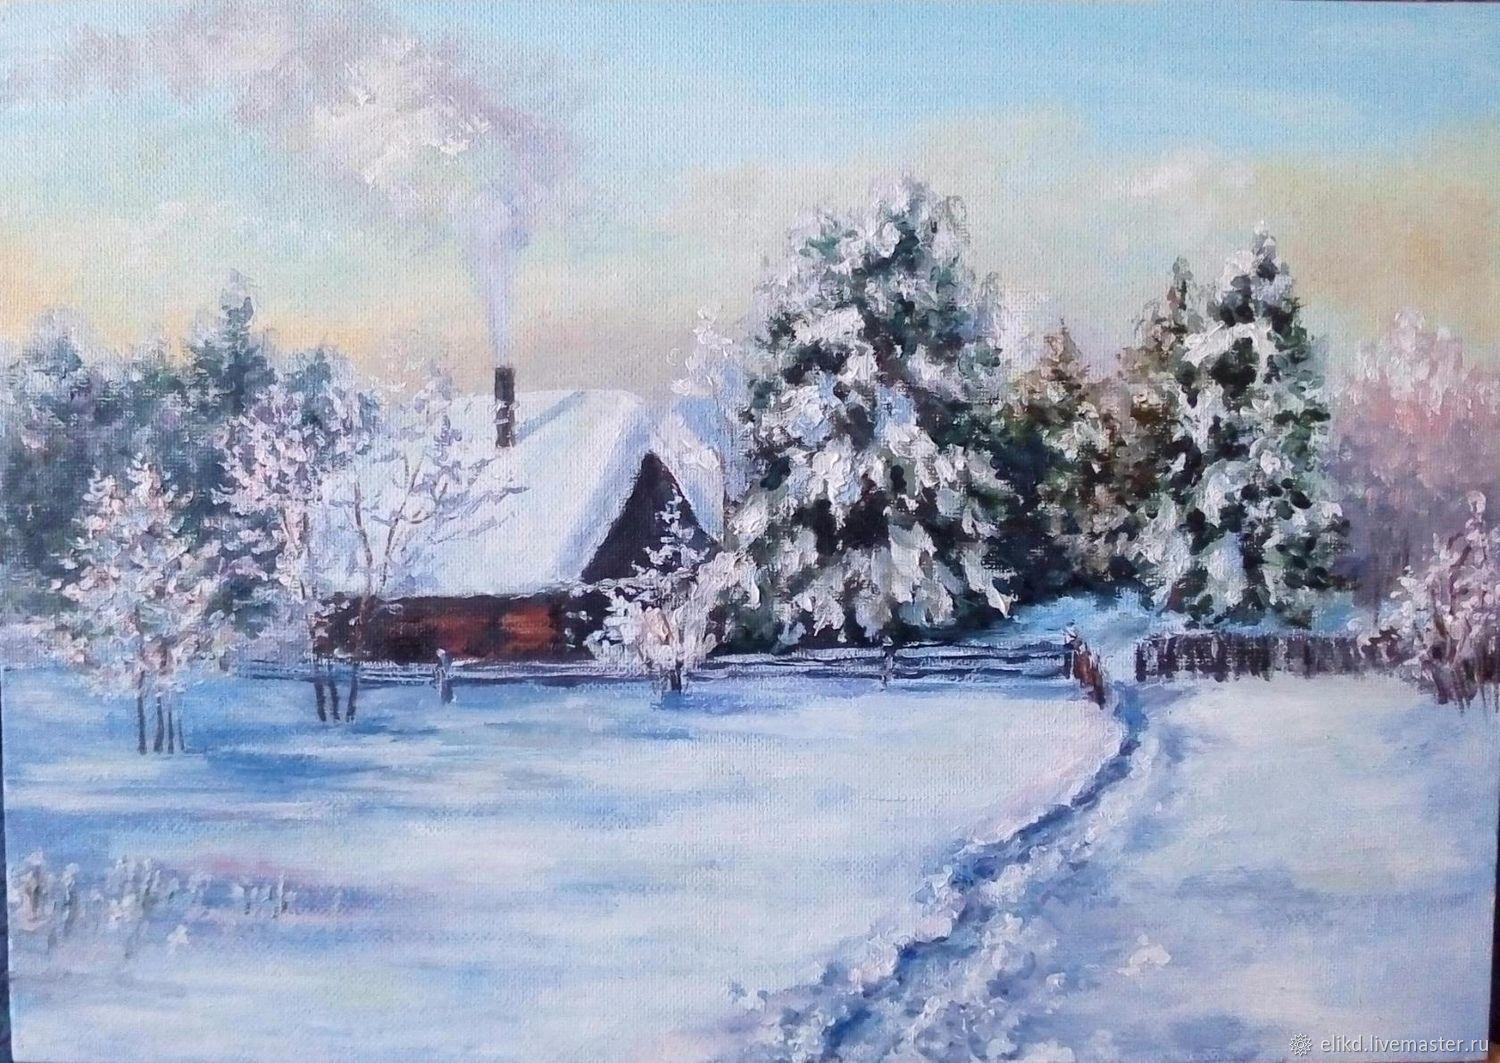 Стихотворение «Идет зима идет...», поэт Бонсюкова Александра